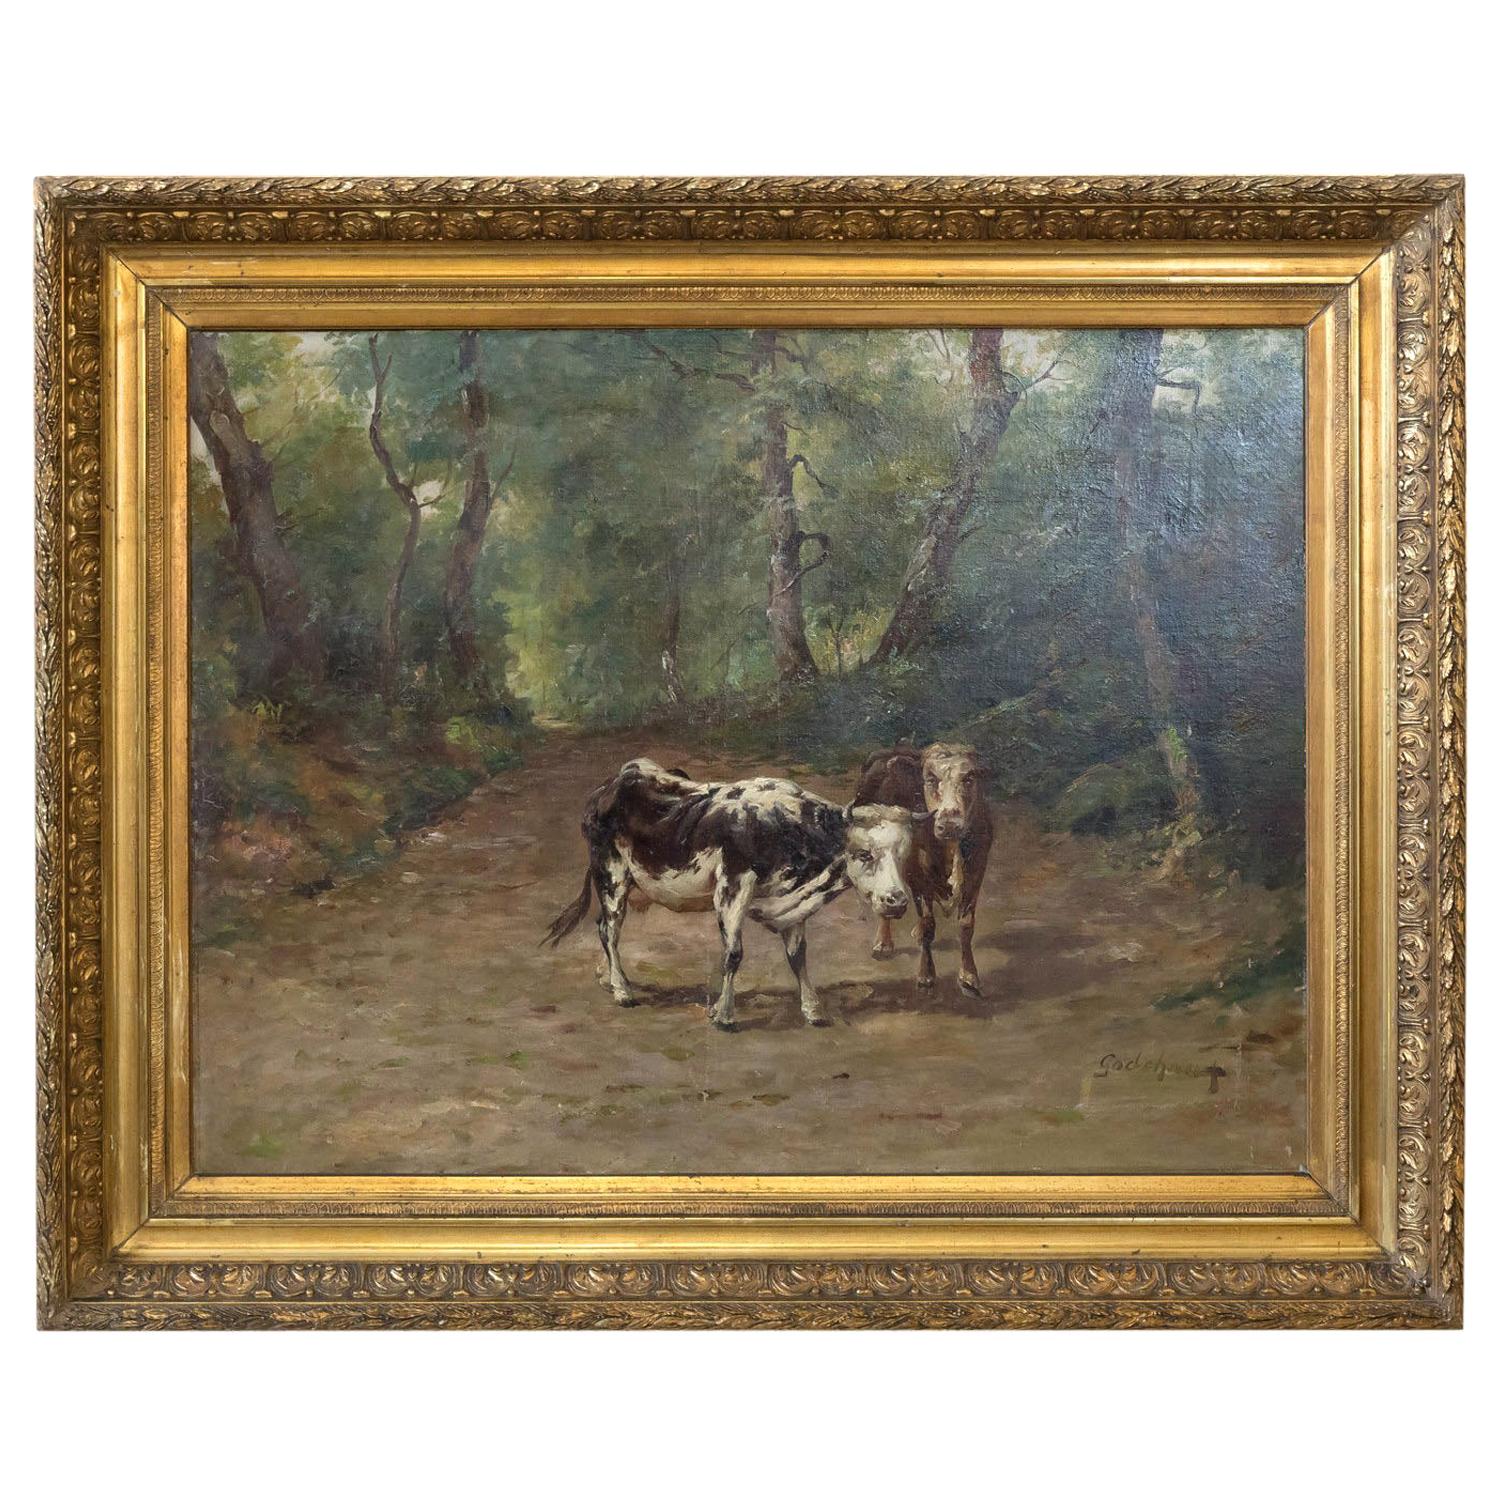 Peinture française du 19ème siècle représentant des vaches sur un chemin de forêt par Emile Godchaux, signée